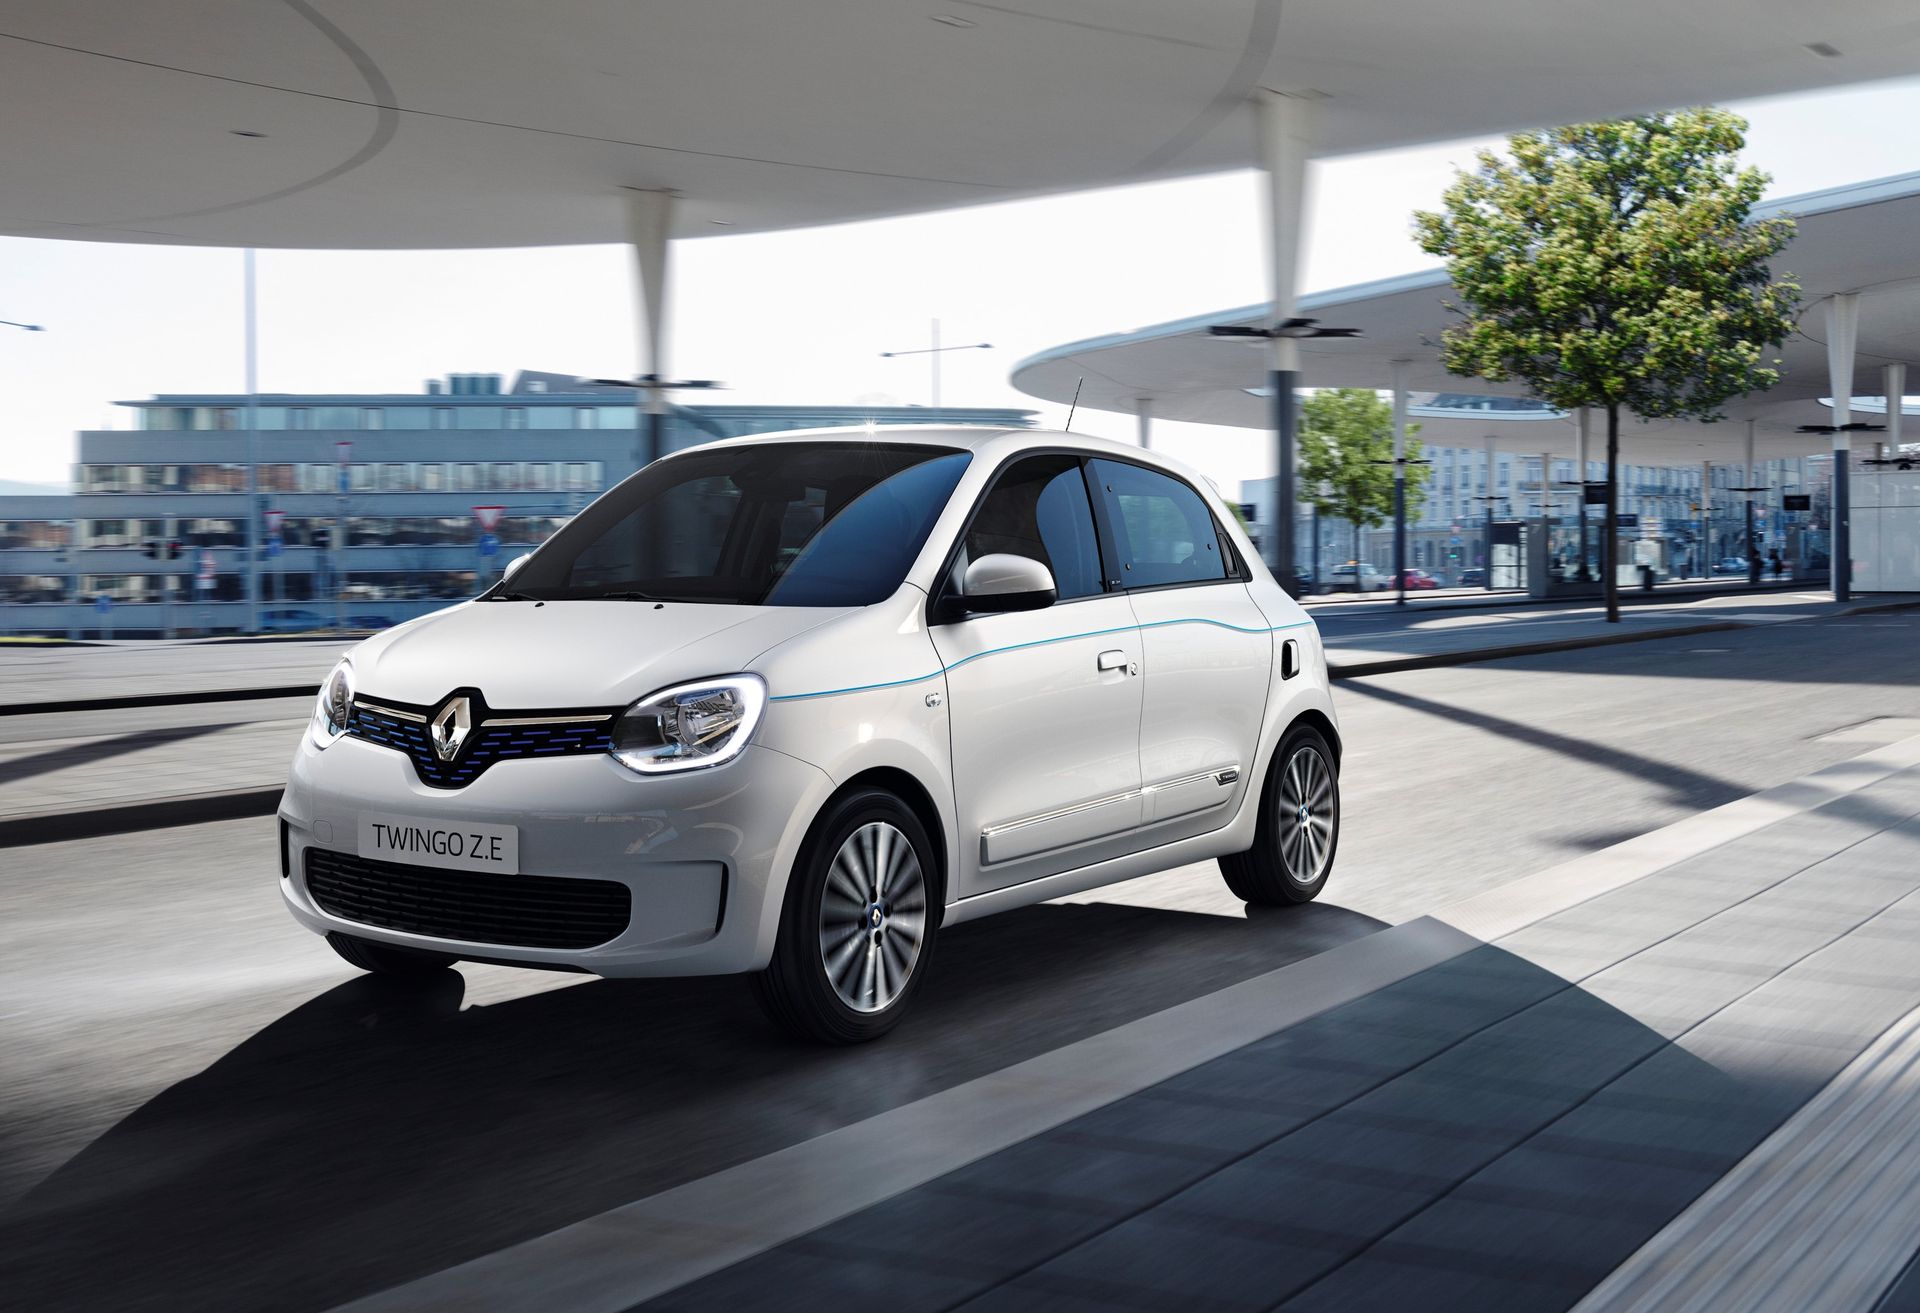 Essai auto : Renault Twingo E-Tech, pour éviter le low-cost